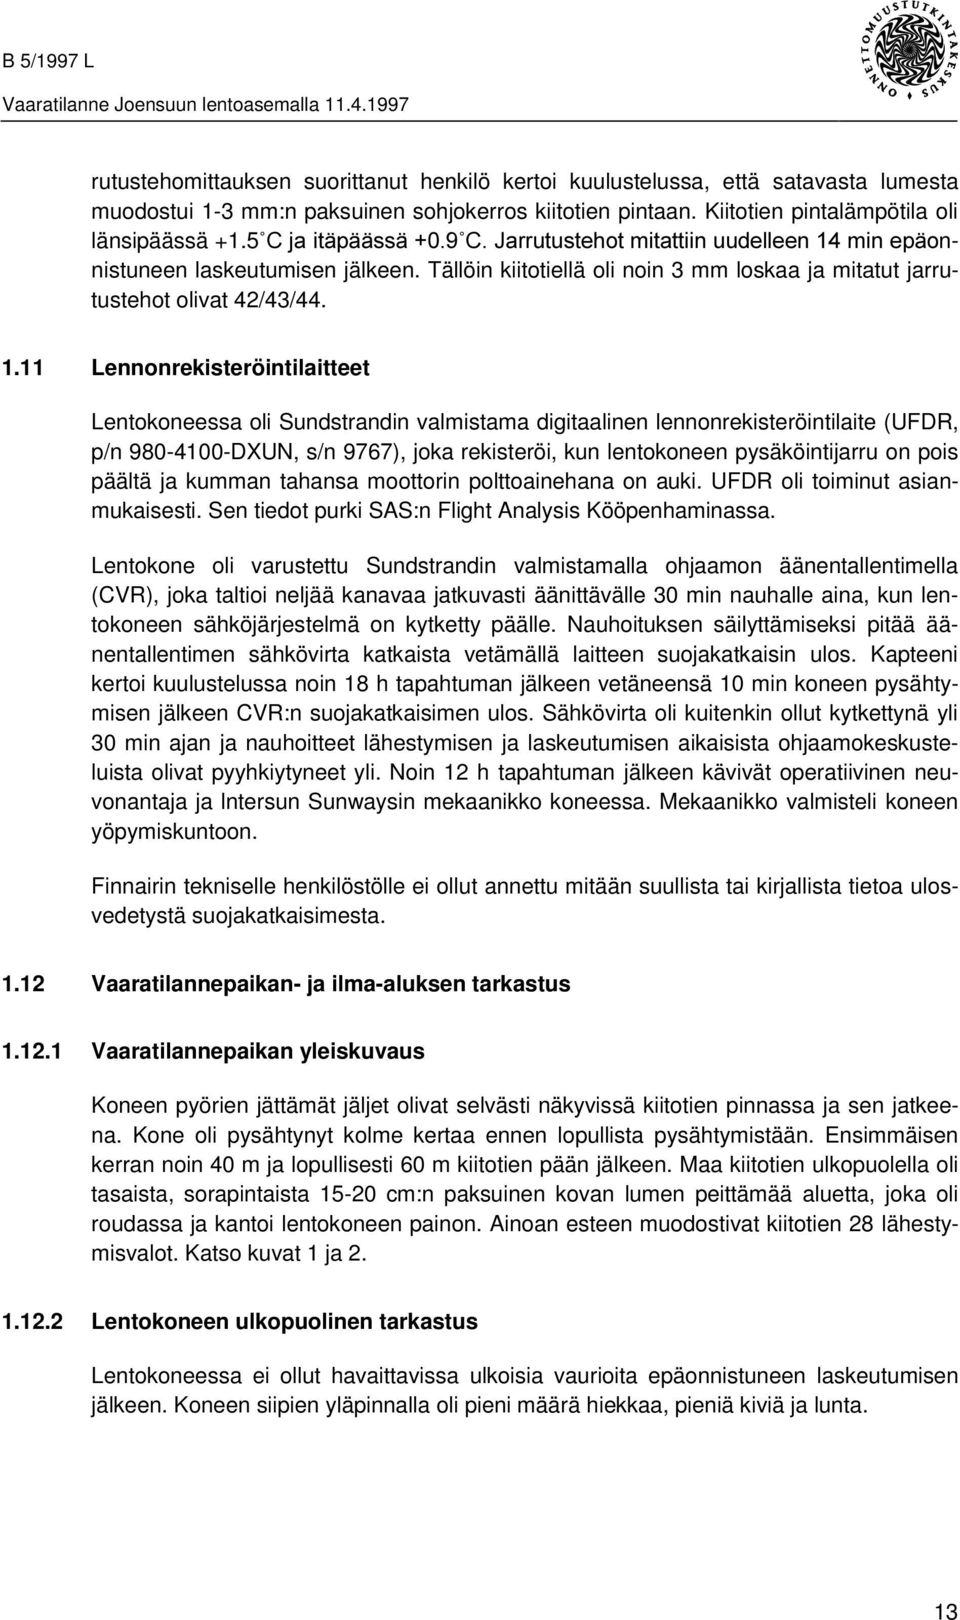 11 Lennonrekisteröintilaitteet Lentokoneessa oli Sundstrandin valmistama digitaalinen lennonrekisteröintilaite (UFDR, p/n 980-4100-DXUN, s/n 9767), joka rekisteröi, kun lentokoneen pysäköintijarru on